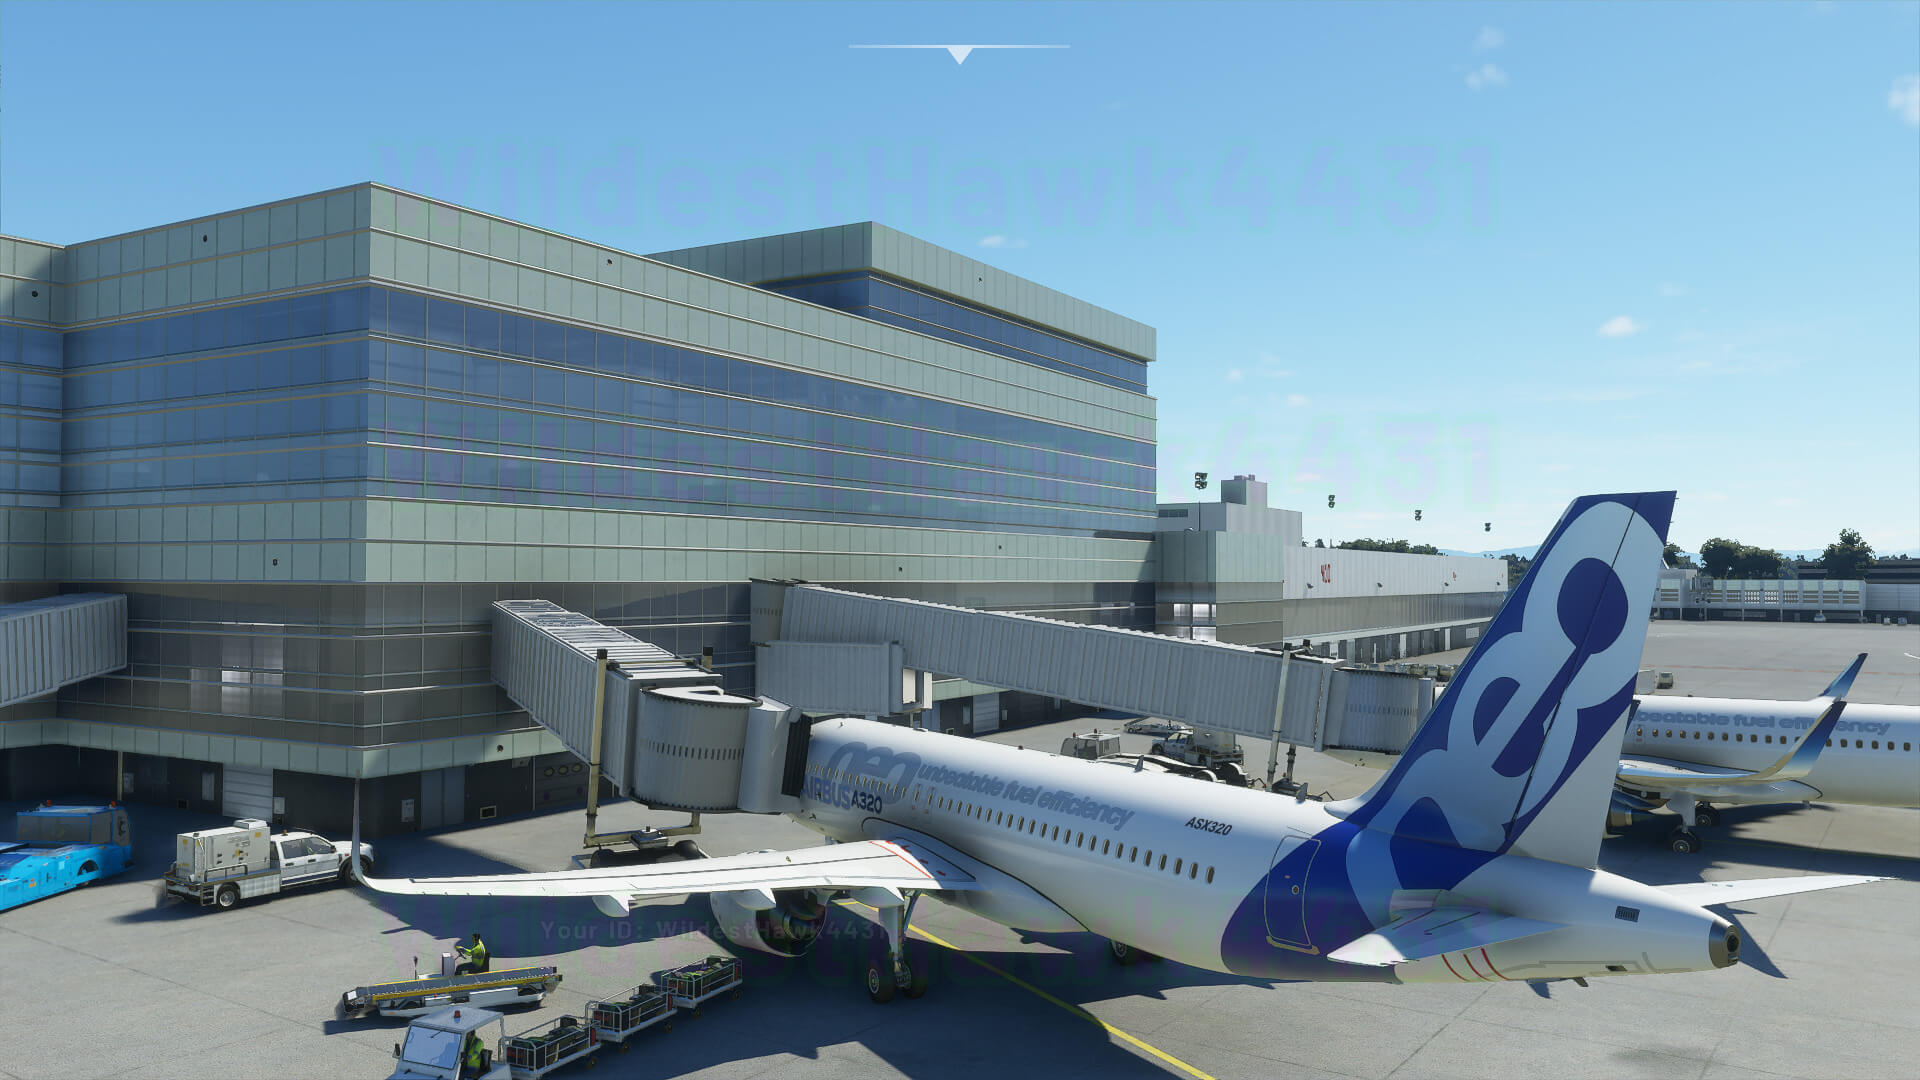 《微软飞行模拟》新截图公布 展示环境、城市和飞行器